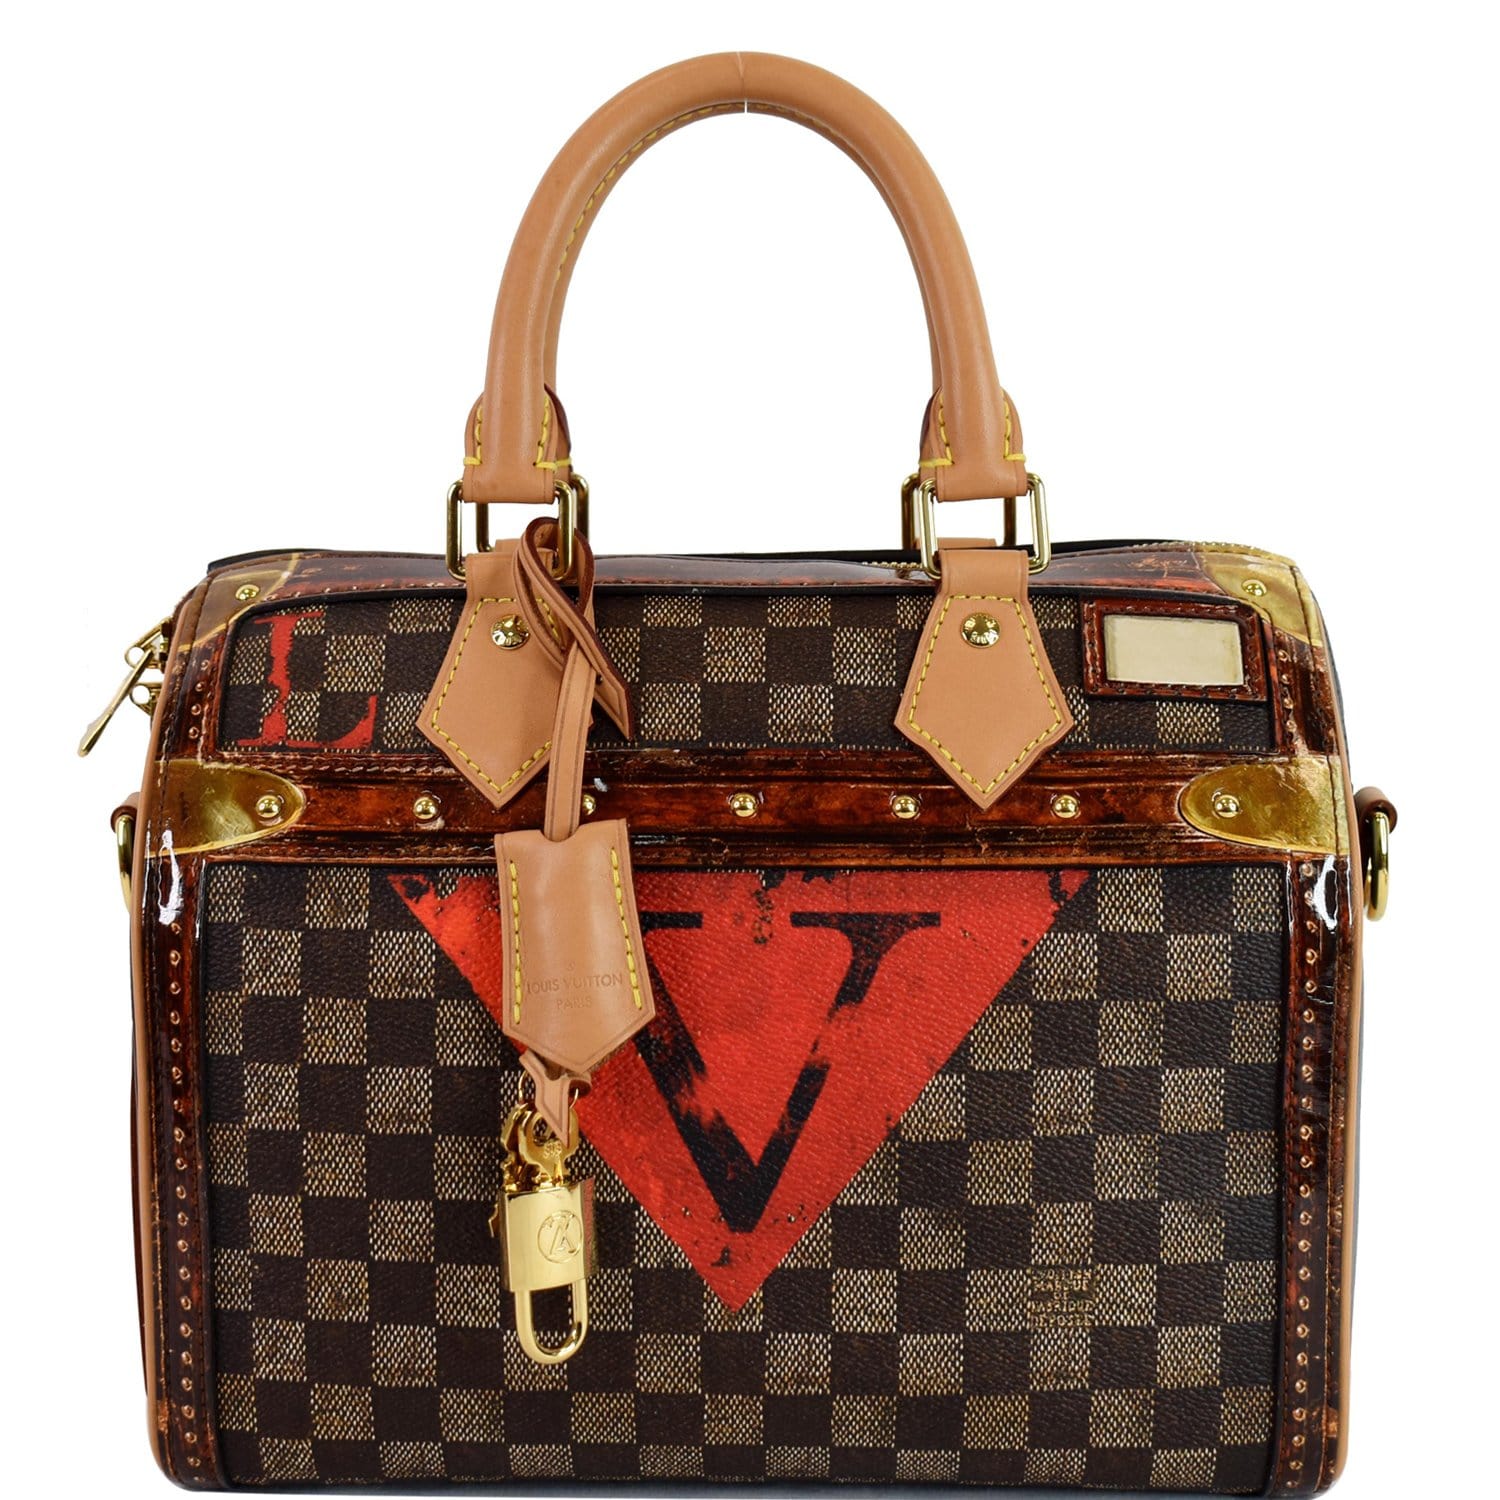 Louis Vuitton Speedy Bag  Vuitton, Louis vuitton trunk, Louis vuitton  handbags